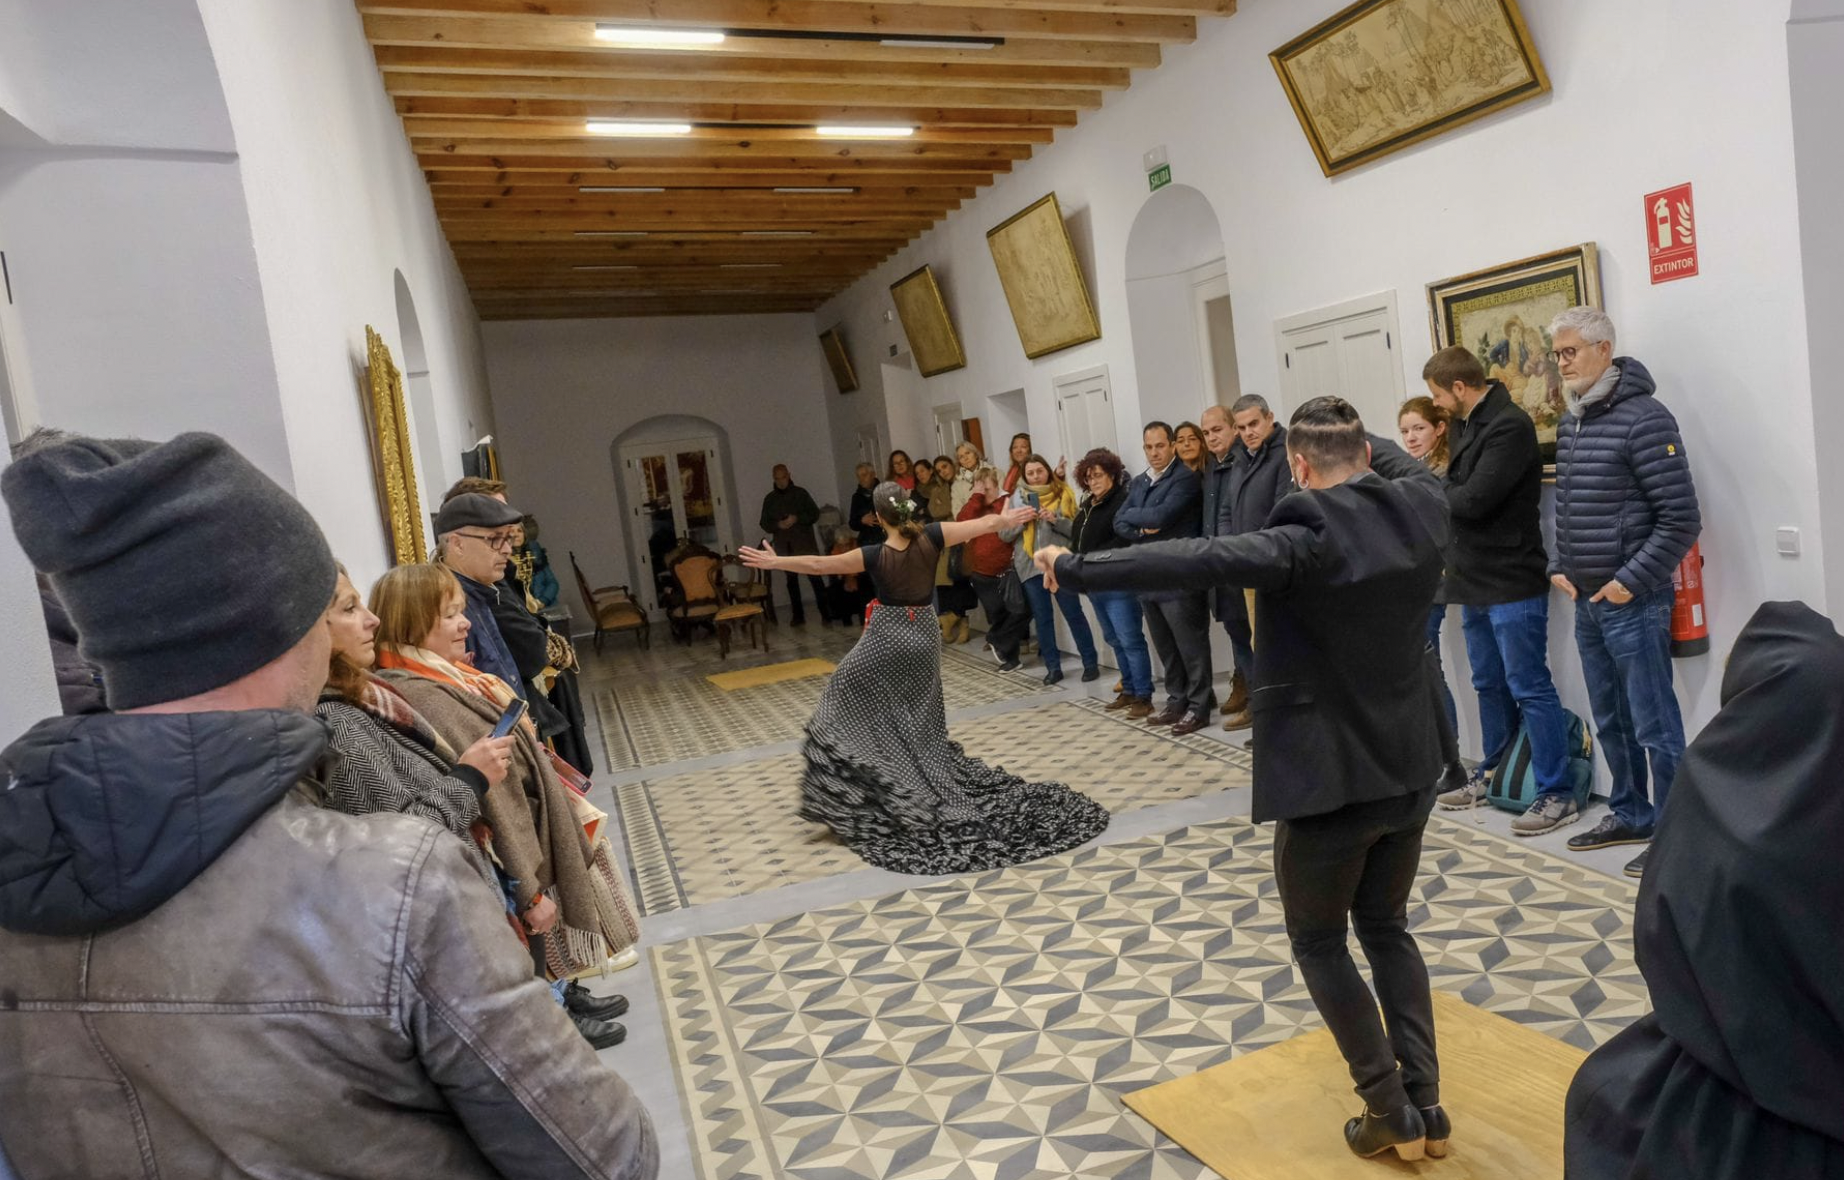 Flamenco en vivo en un castillo de la provincia de Cádiz. Interior del Castillo de Vejer con el espectáculo flamenco en vivo.